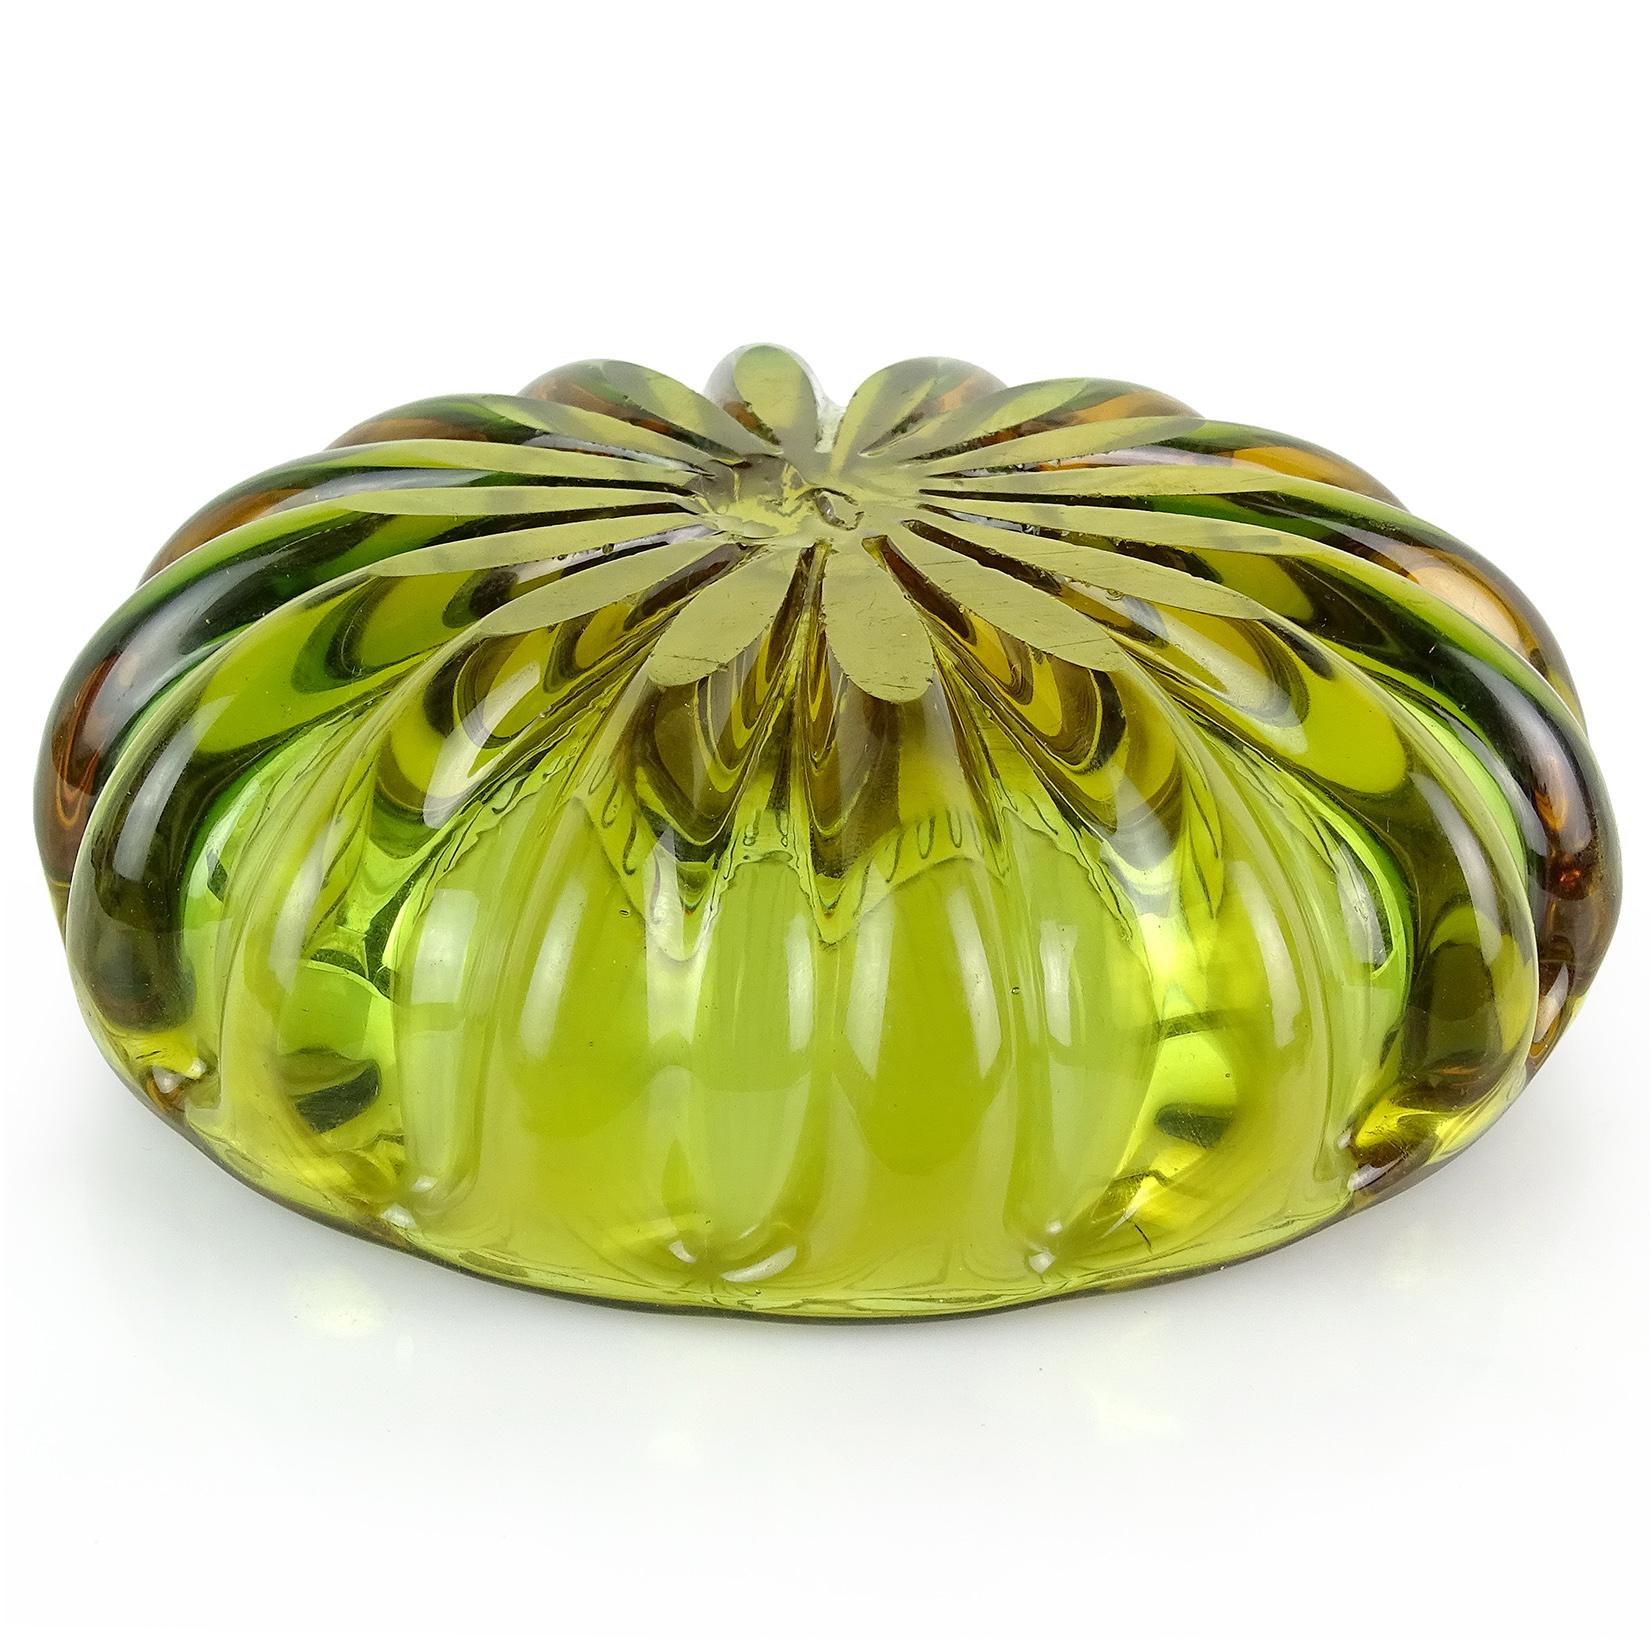 vintage green glass fruit bowl